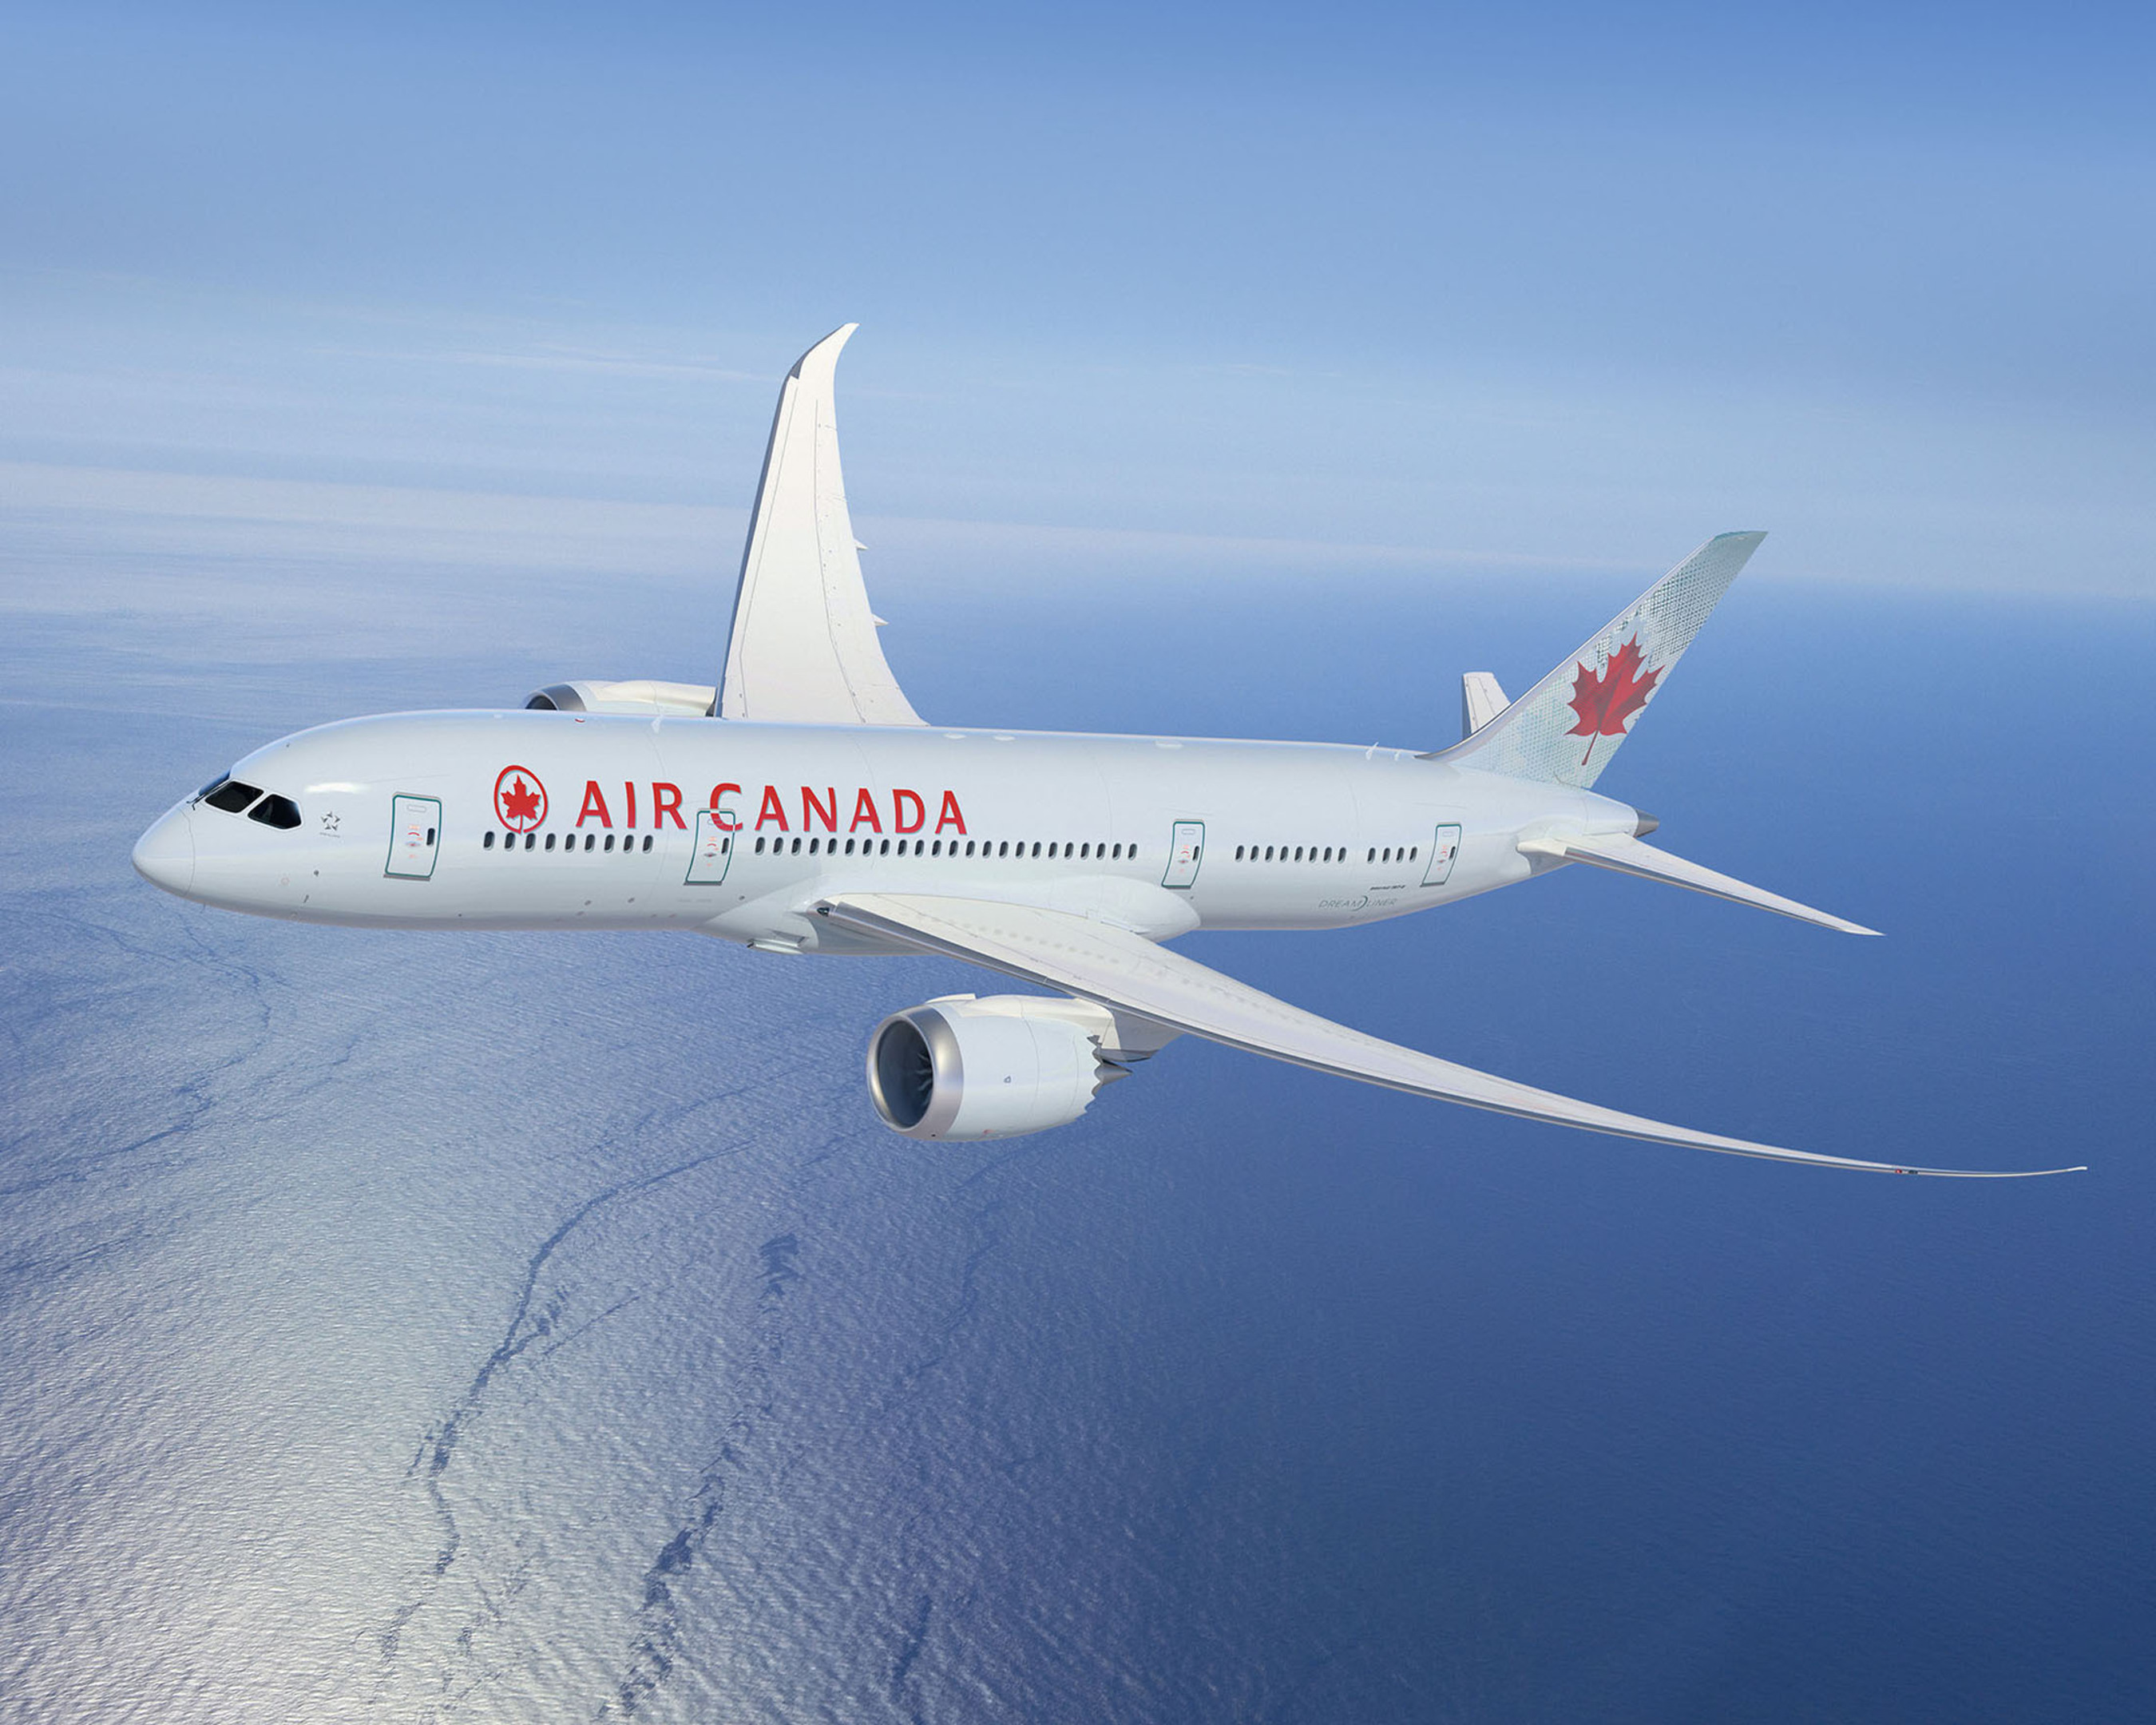 Boeing Dreamliner 787-8. (PRNewsFoto/Air Canada) (PRNewsFoto/AIR CANADA)